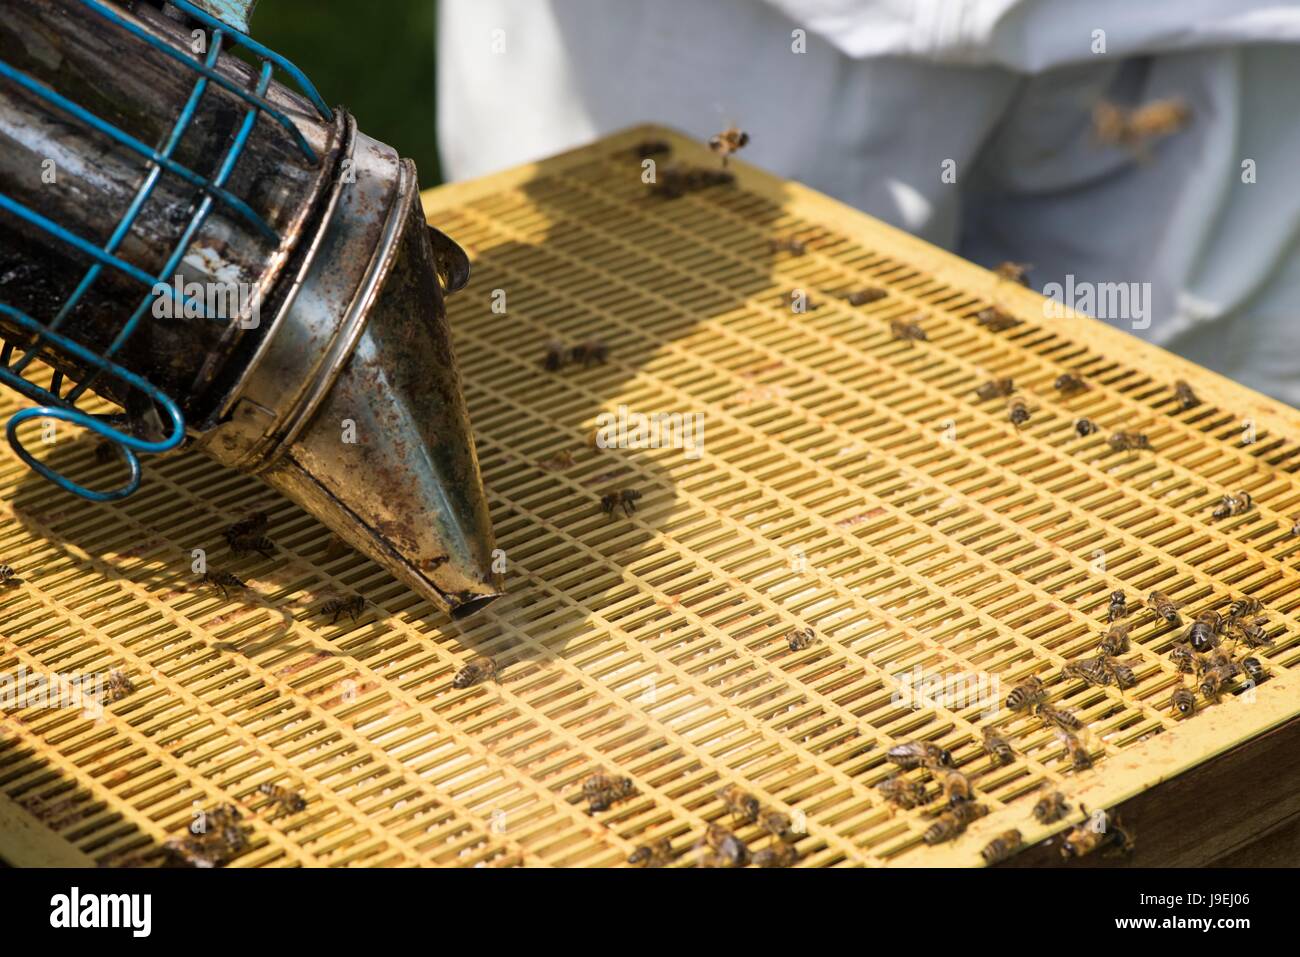 Apicoltore utilizzando fumatore per tranquillizzare la colonia di api prima di ispezione, Norfolk, Inghilterra, maggio. Foto Stock